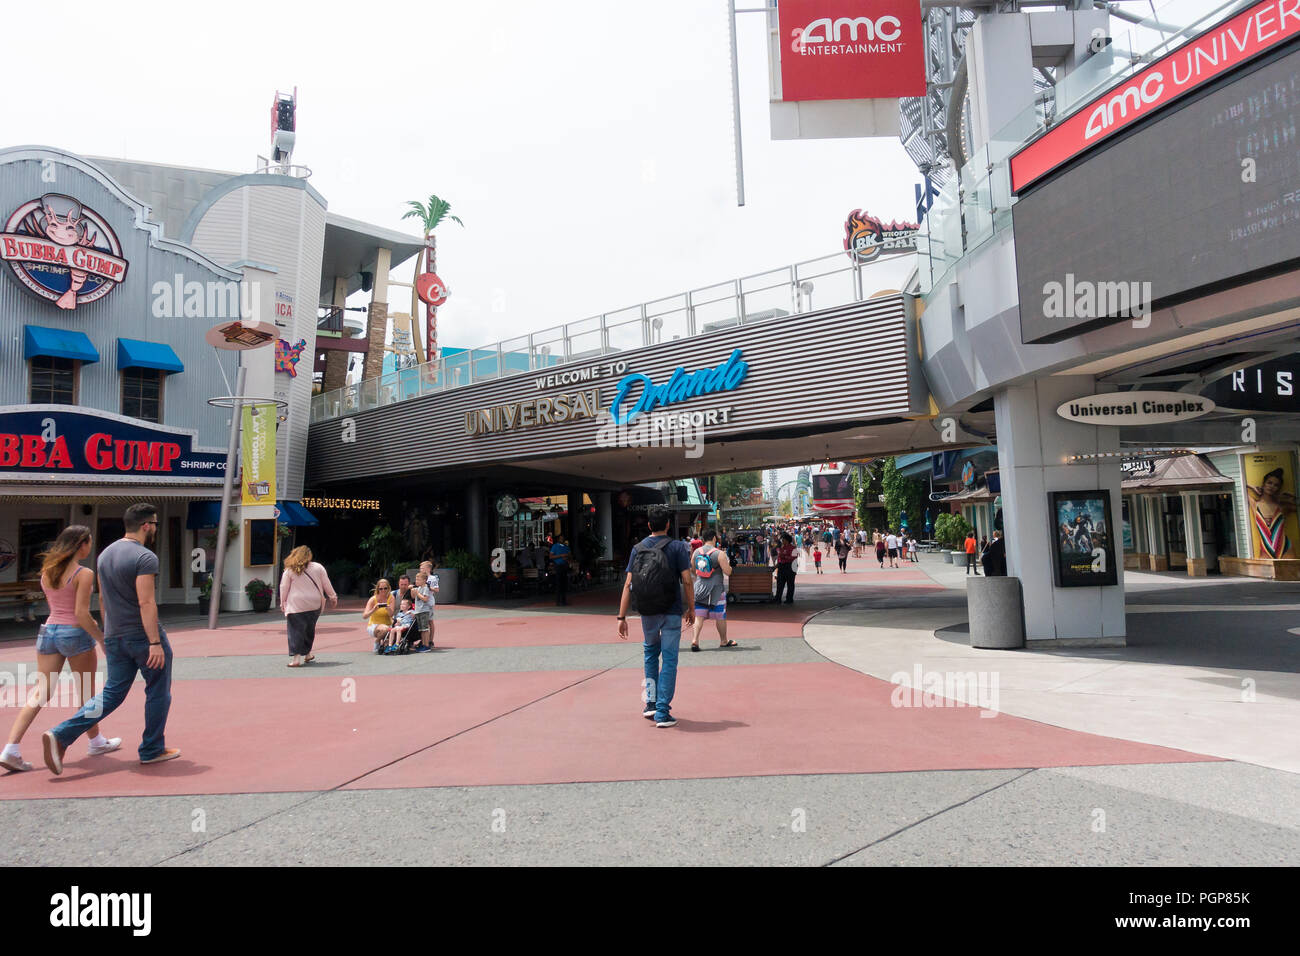 Entrance to Universal Studios Orlando - Orlando, Florida USA Stock Photo